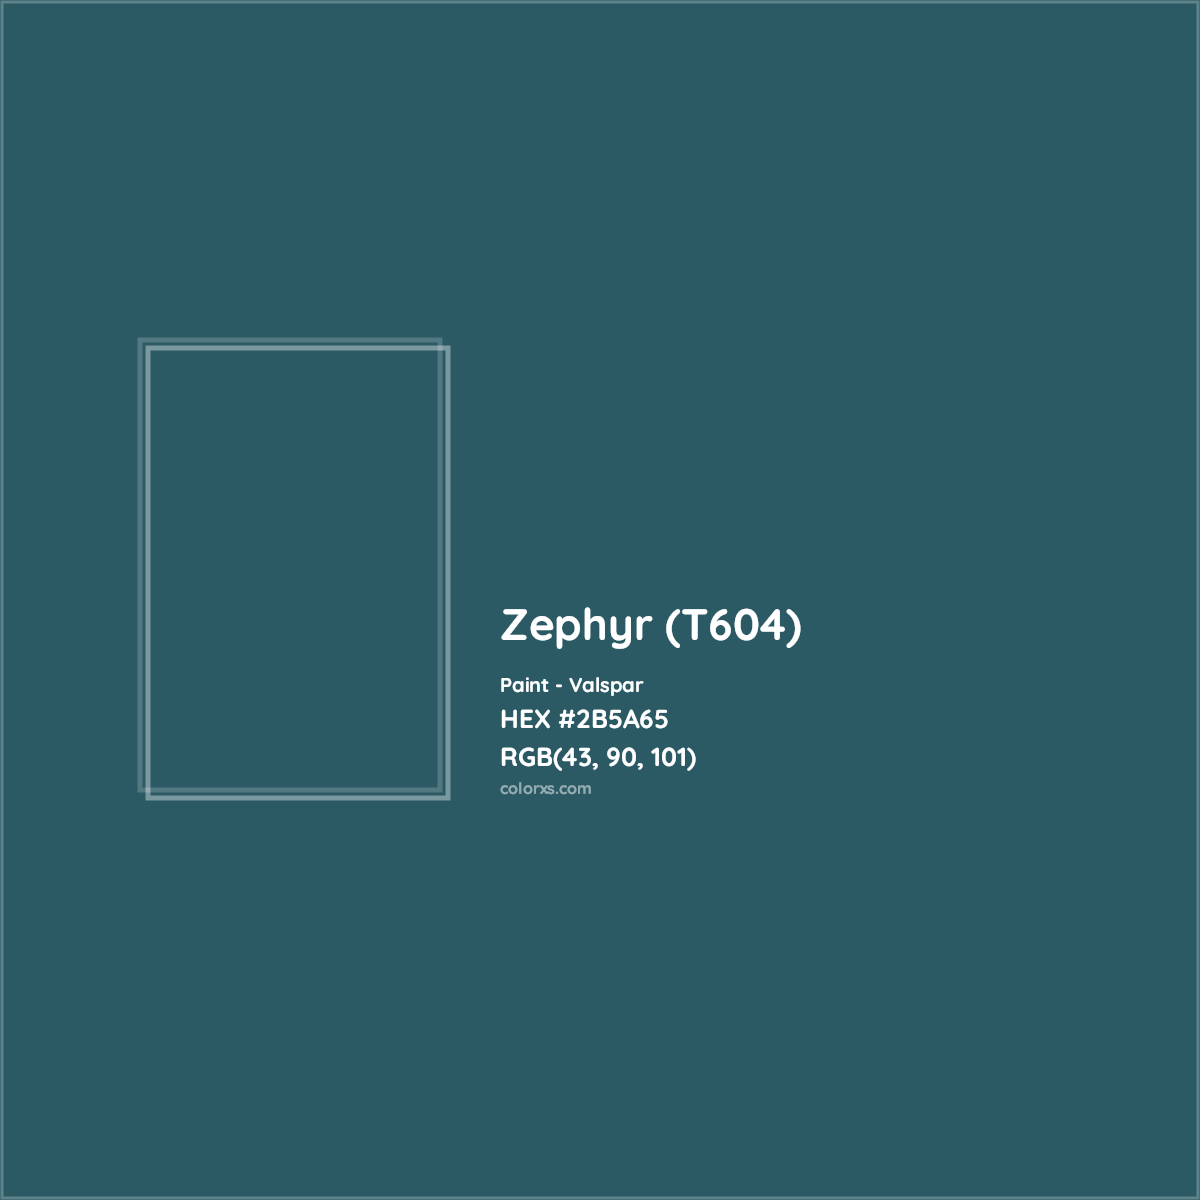 HEX #2B5A65 Zephyr (T604) Paint Valspar - Color Code